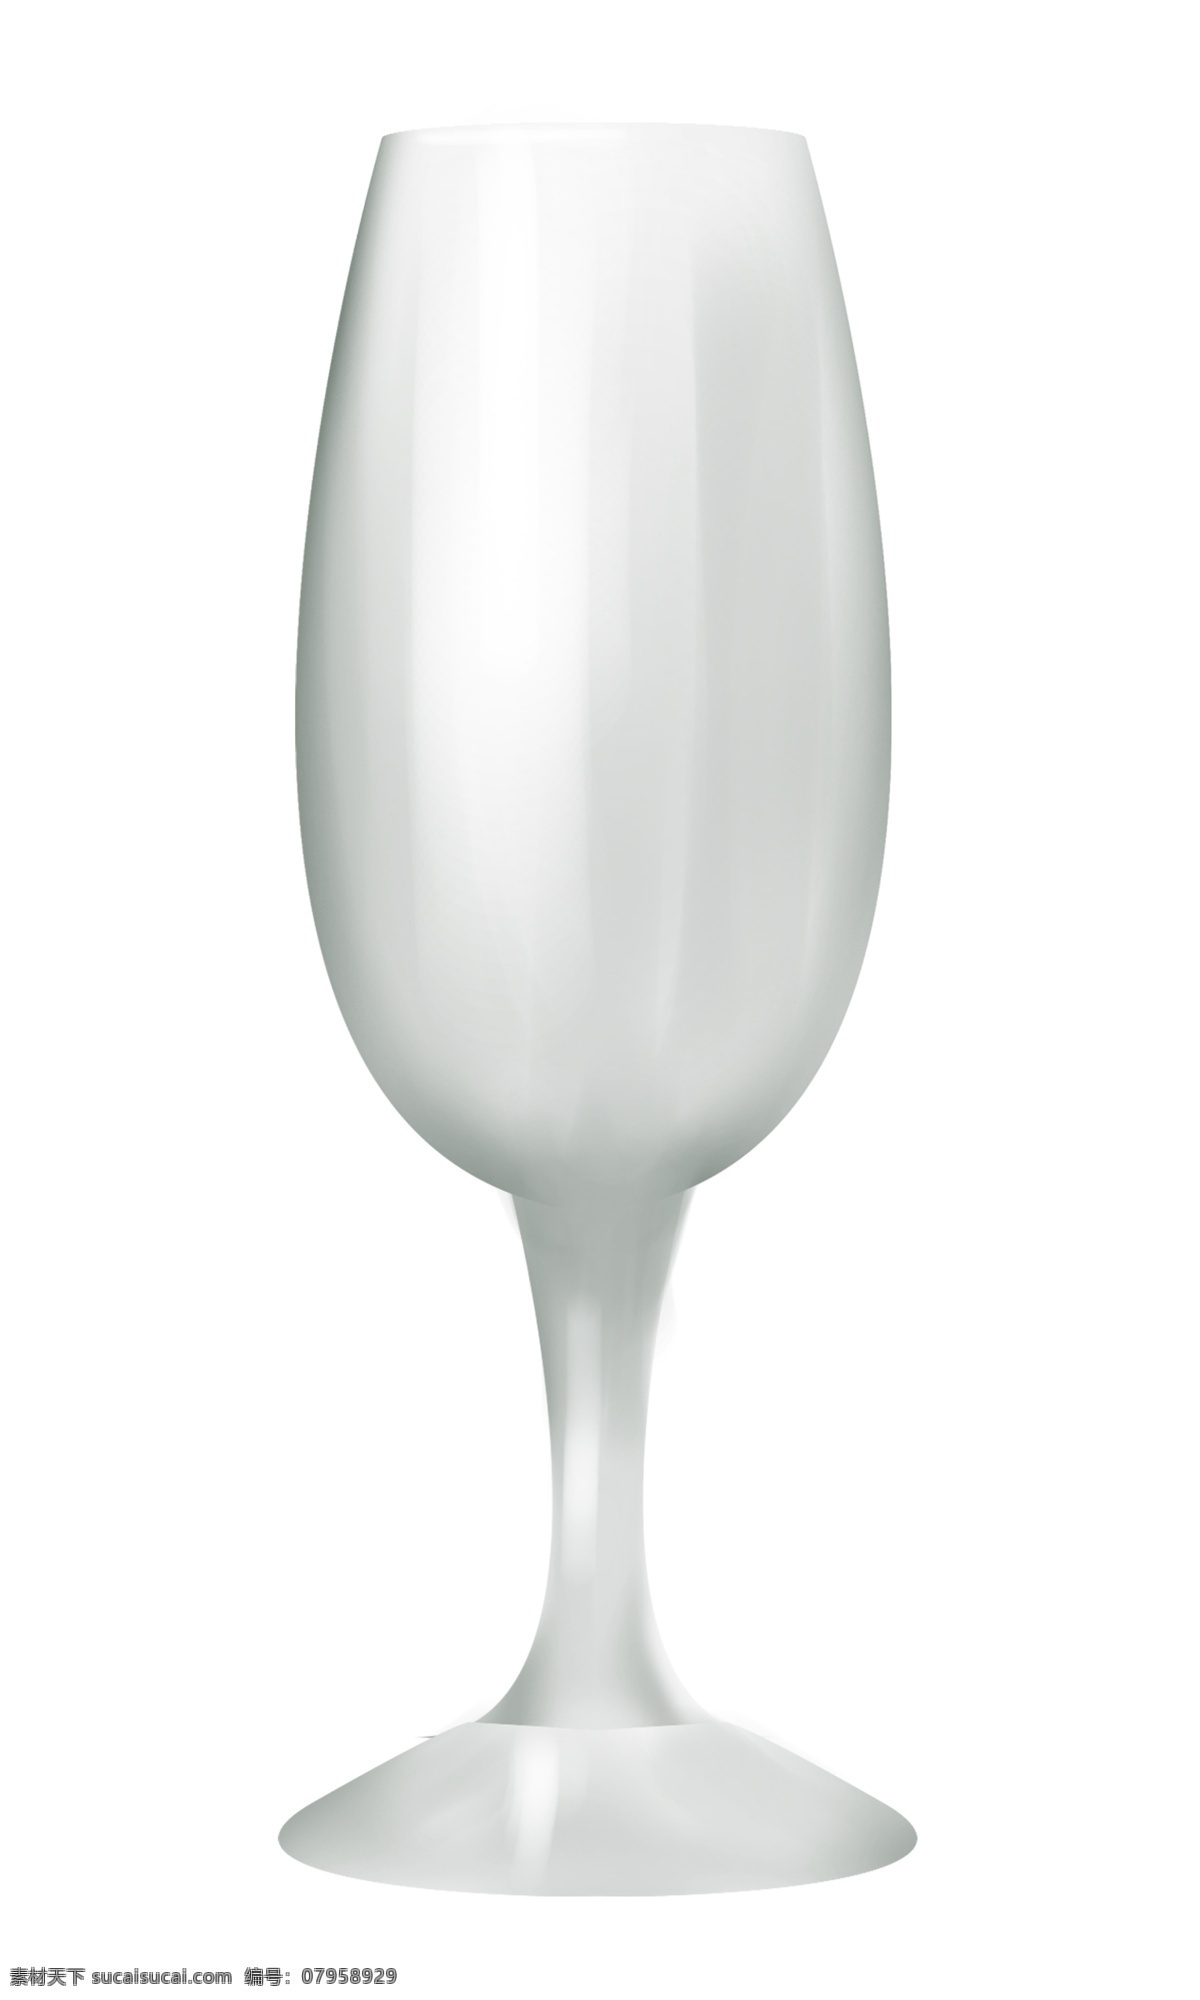 玻璃 杯子 器皿 插画 玻璃器皿 玻璃杯子 容器 瓶子 透明 杯子容器